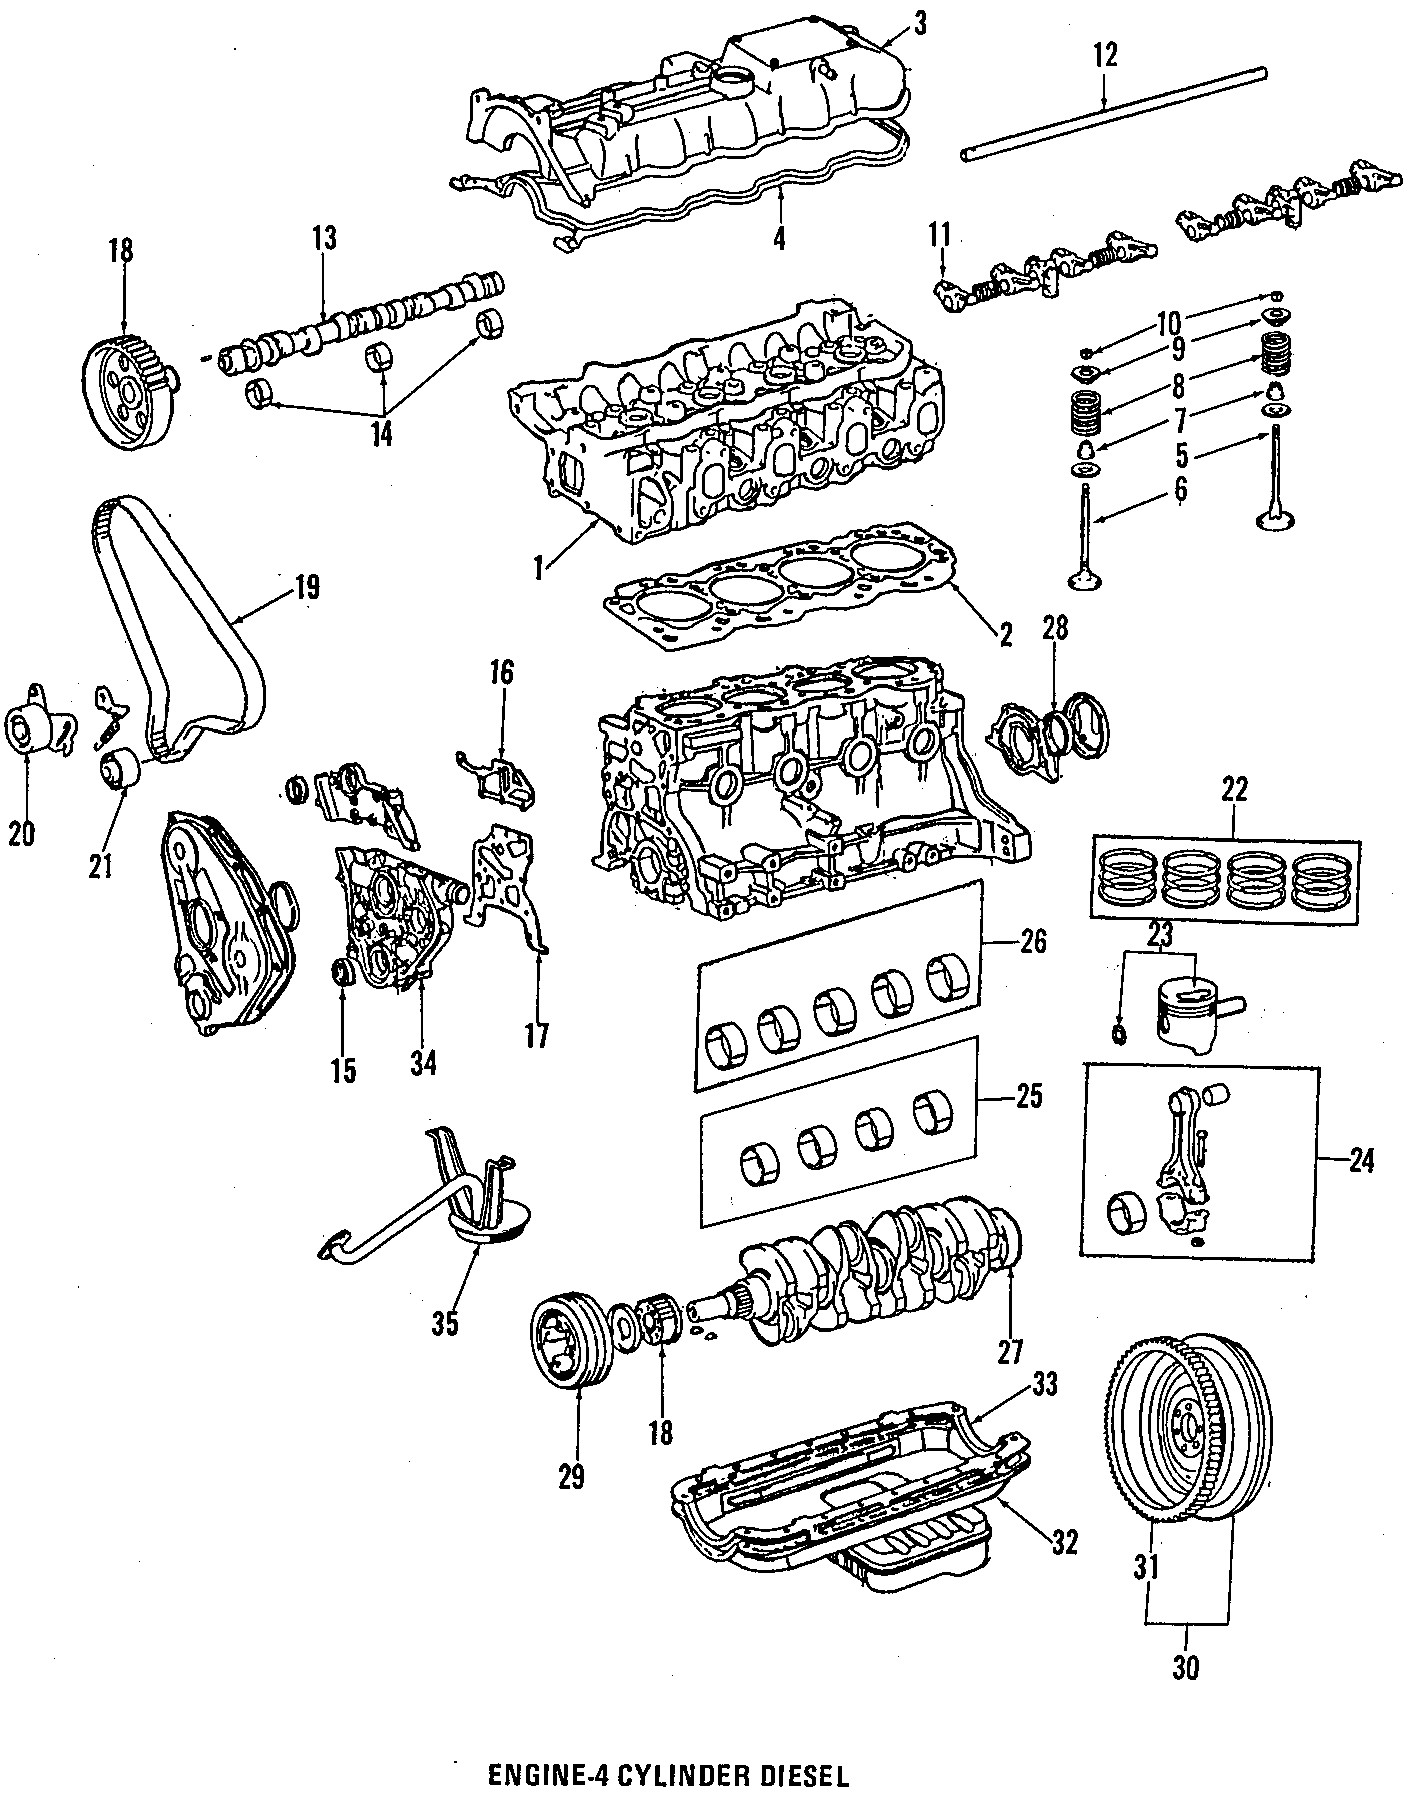 Parts Of A Piston Diagram 1984 toyota Pickup Engine Parts Pistons Rings & Bearings Piston W Of Parts Of A Piston Diagram